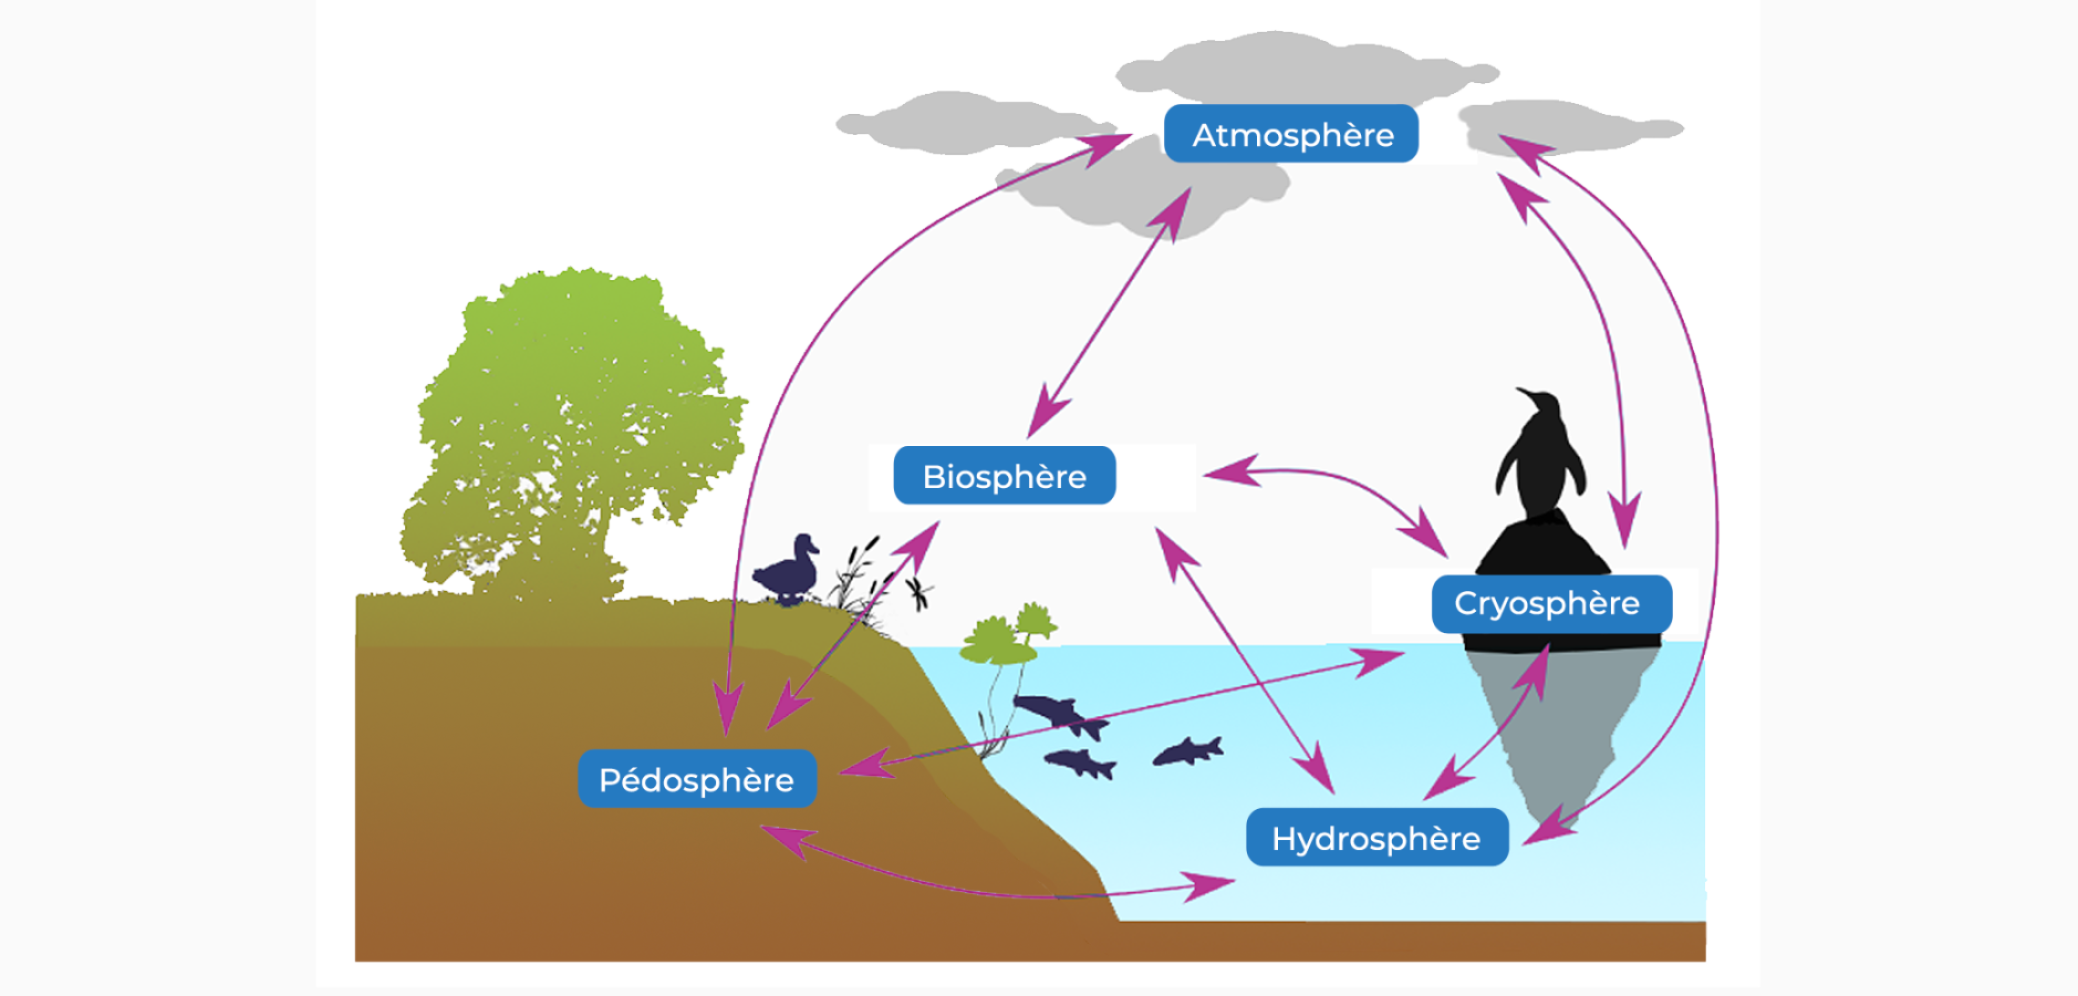 Les compartiments terrestres : atmosphère, pédosphère, hydrosphère, cryosphère et biosphère